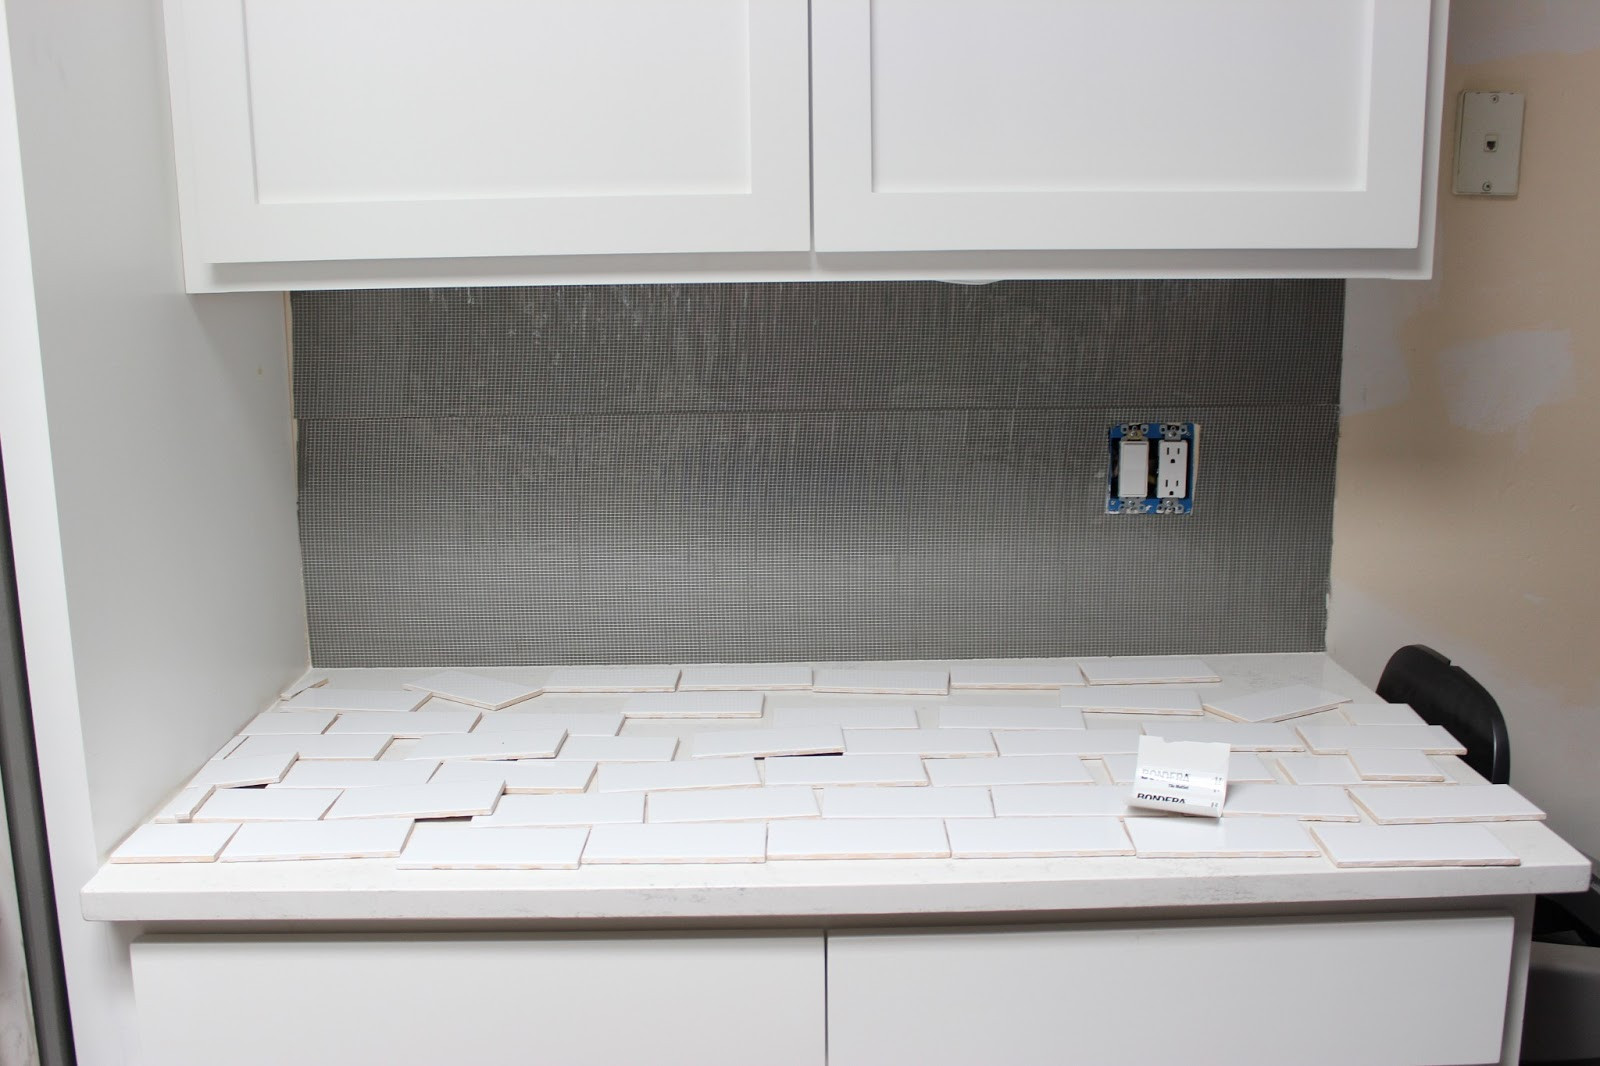 Best ideas about DIY Tile Backsplash
. Save or Pin Easy DIY Subway Tile Backsplash Tutorial Dream Book Design Now.